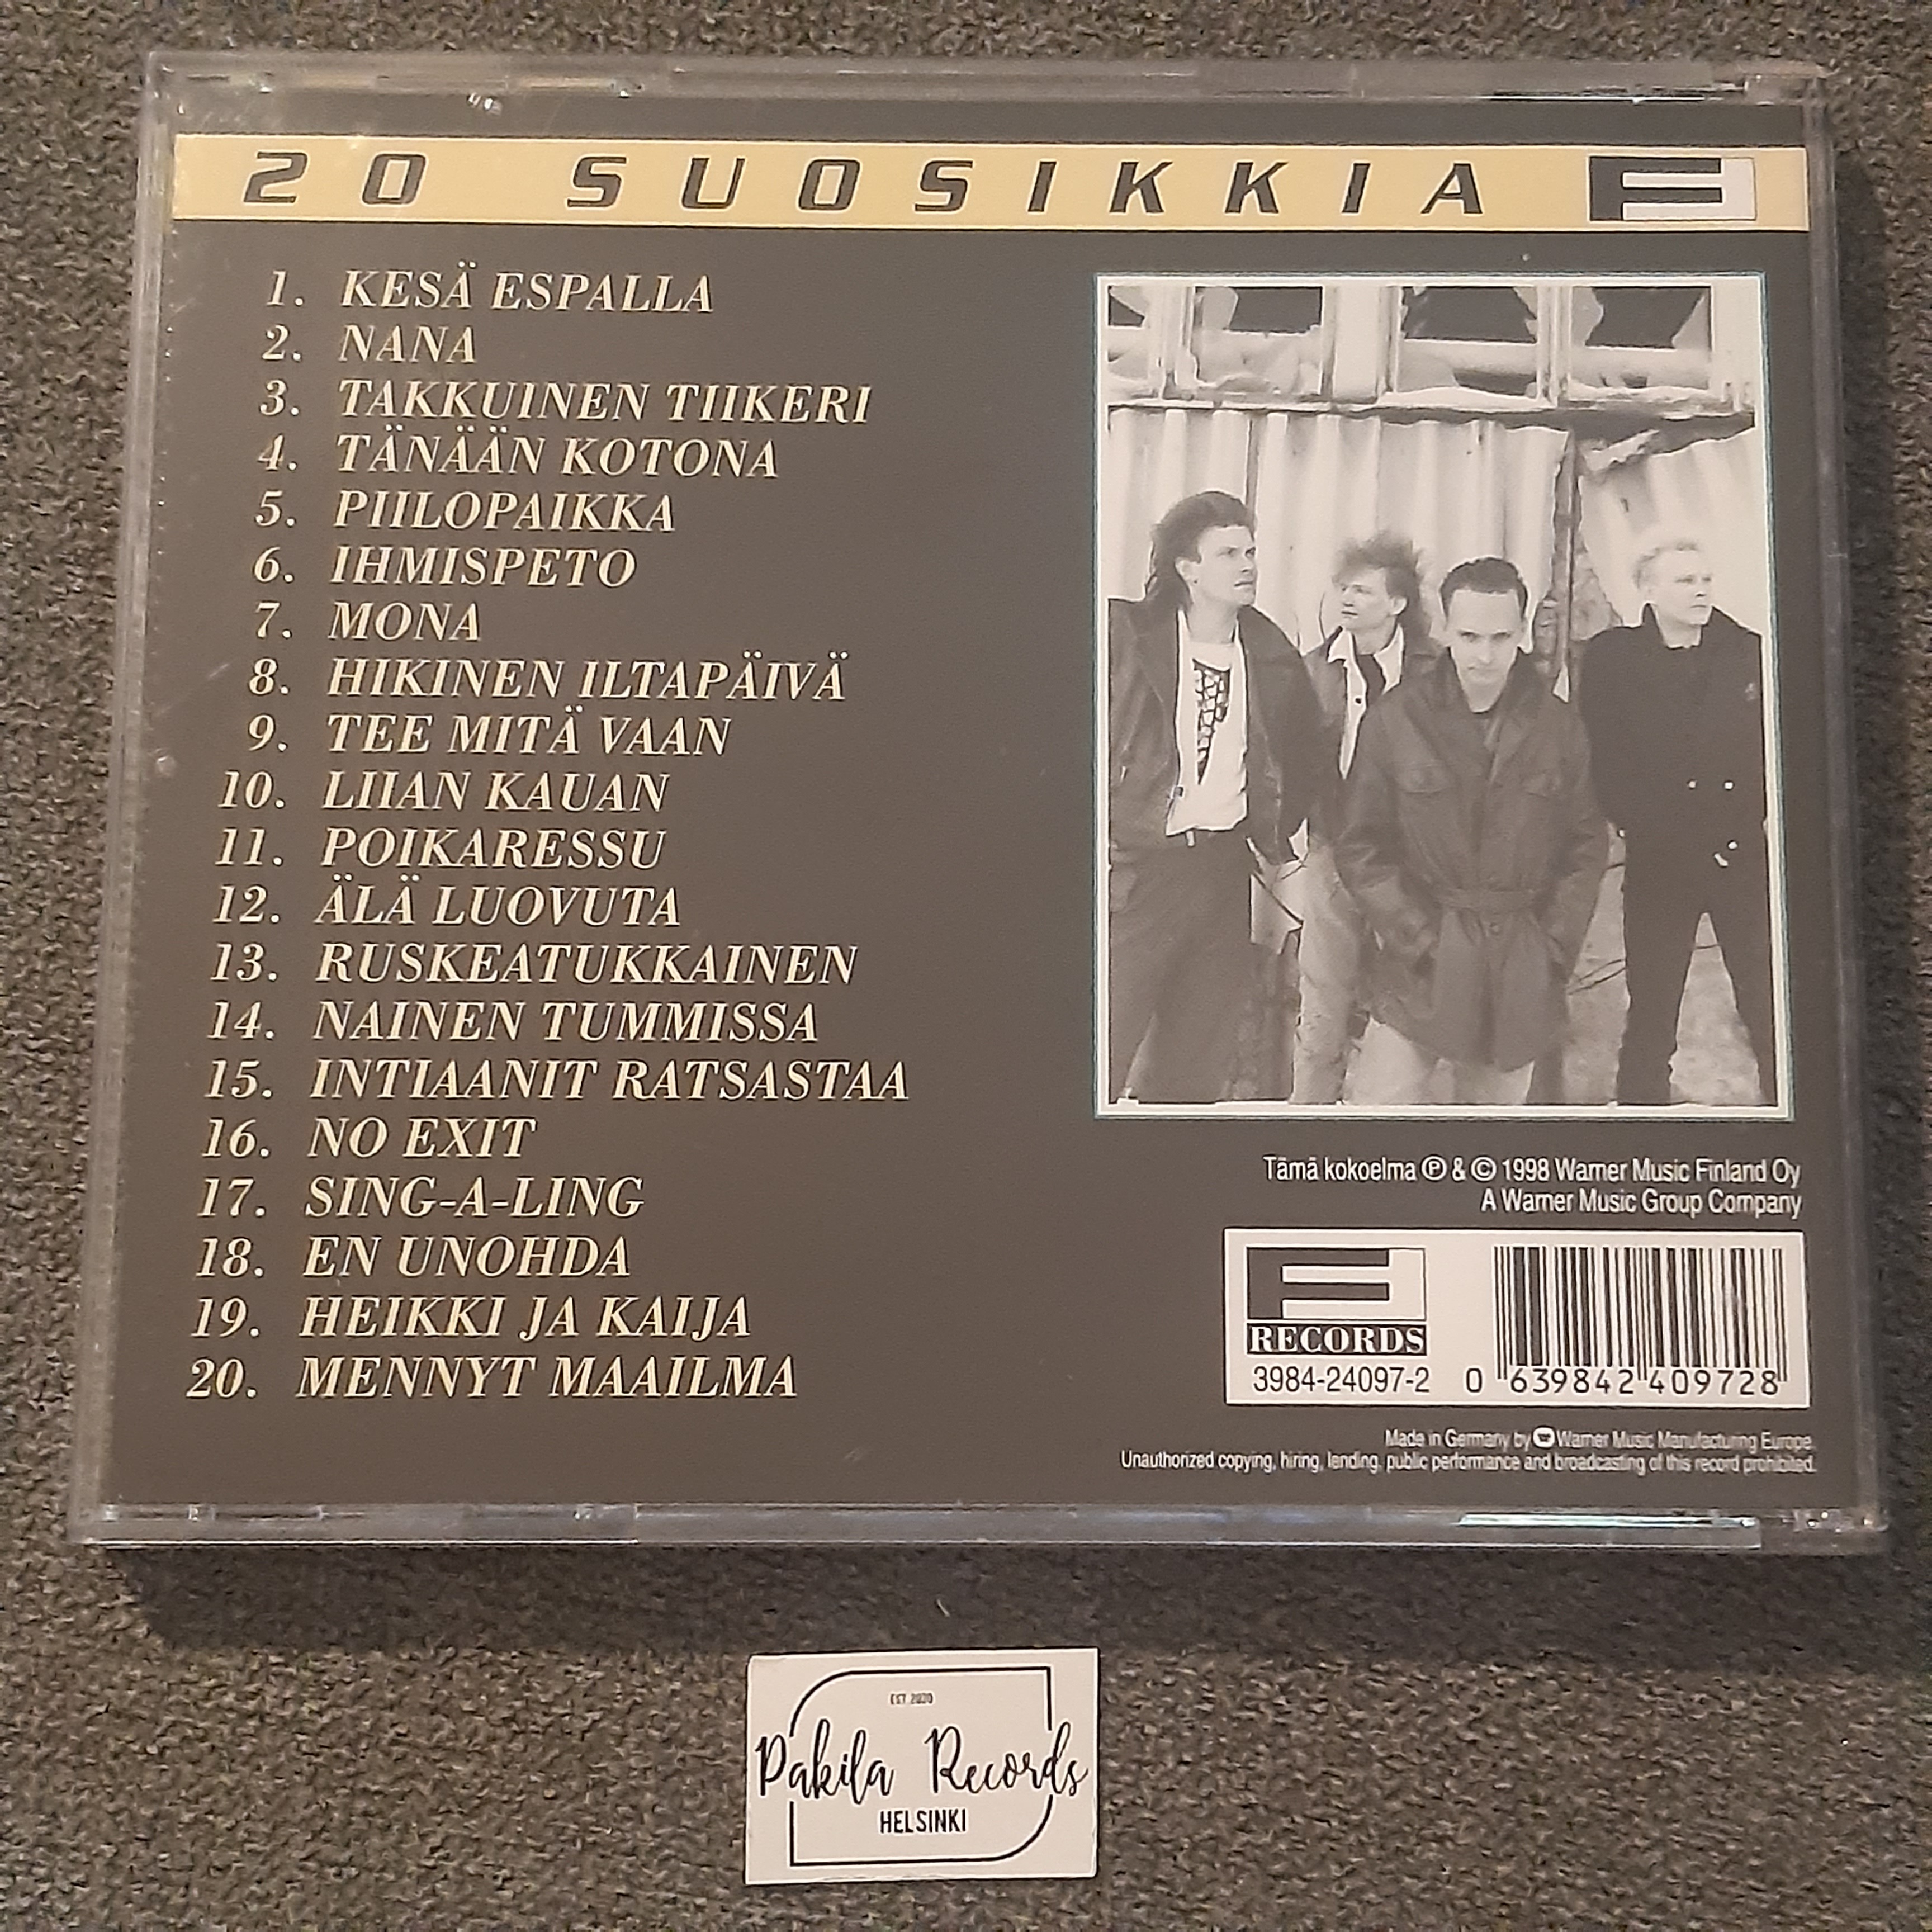 Keba - 20 suosikkia, Kesä Espalla - CD (käytetty)